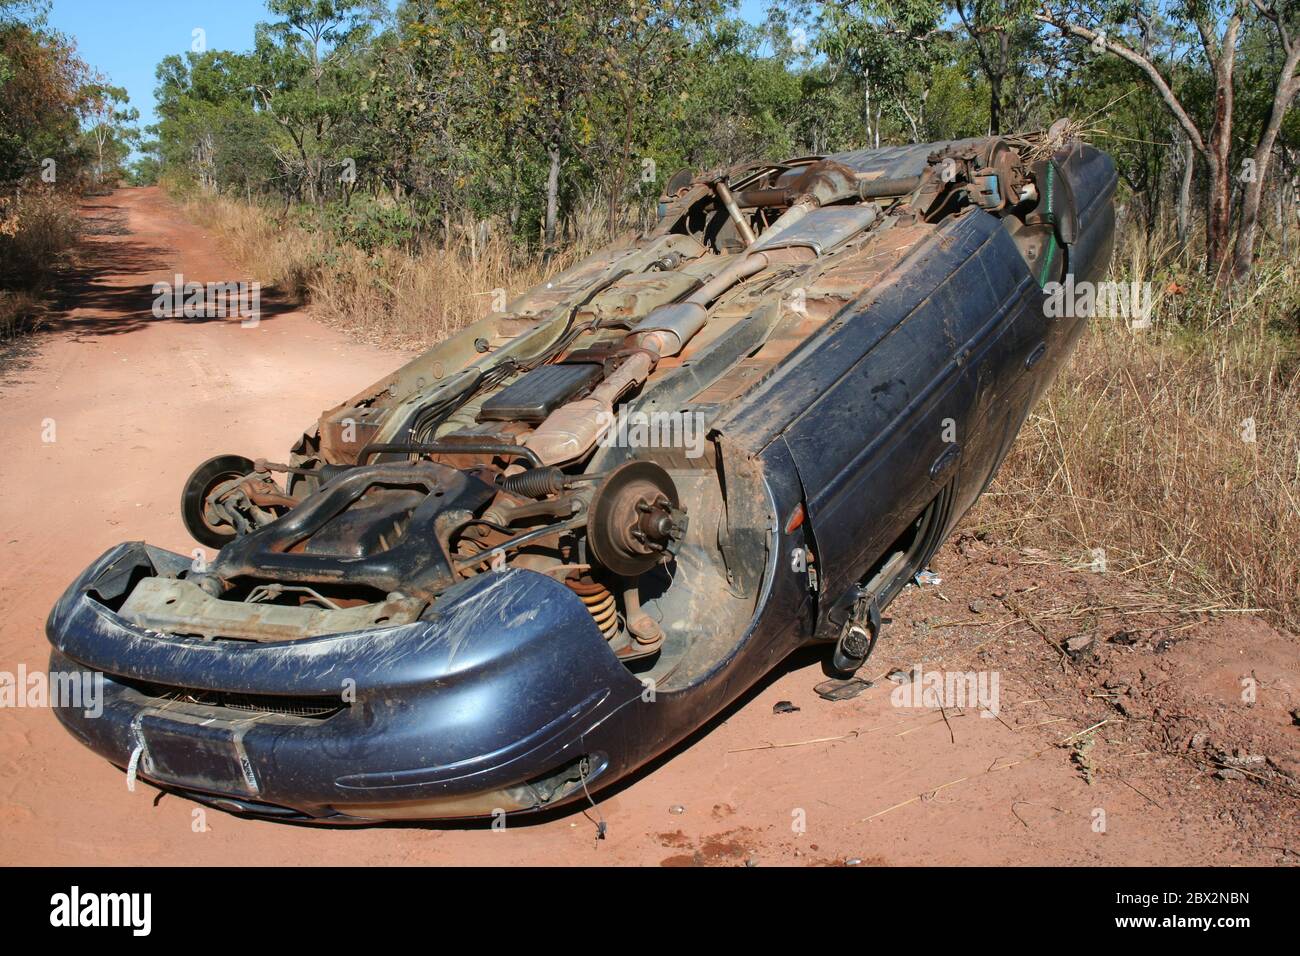 Das Auto drehte sich mitten auf einer unbefestigten Straße, wobei alle Räder im Northern Territory Australia, 2017, abgesetzt wurden Stockfoto